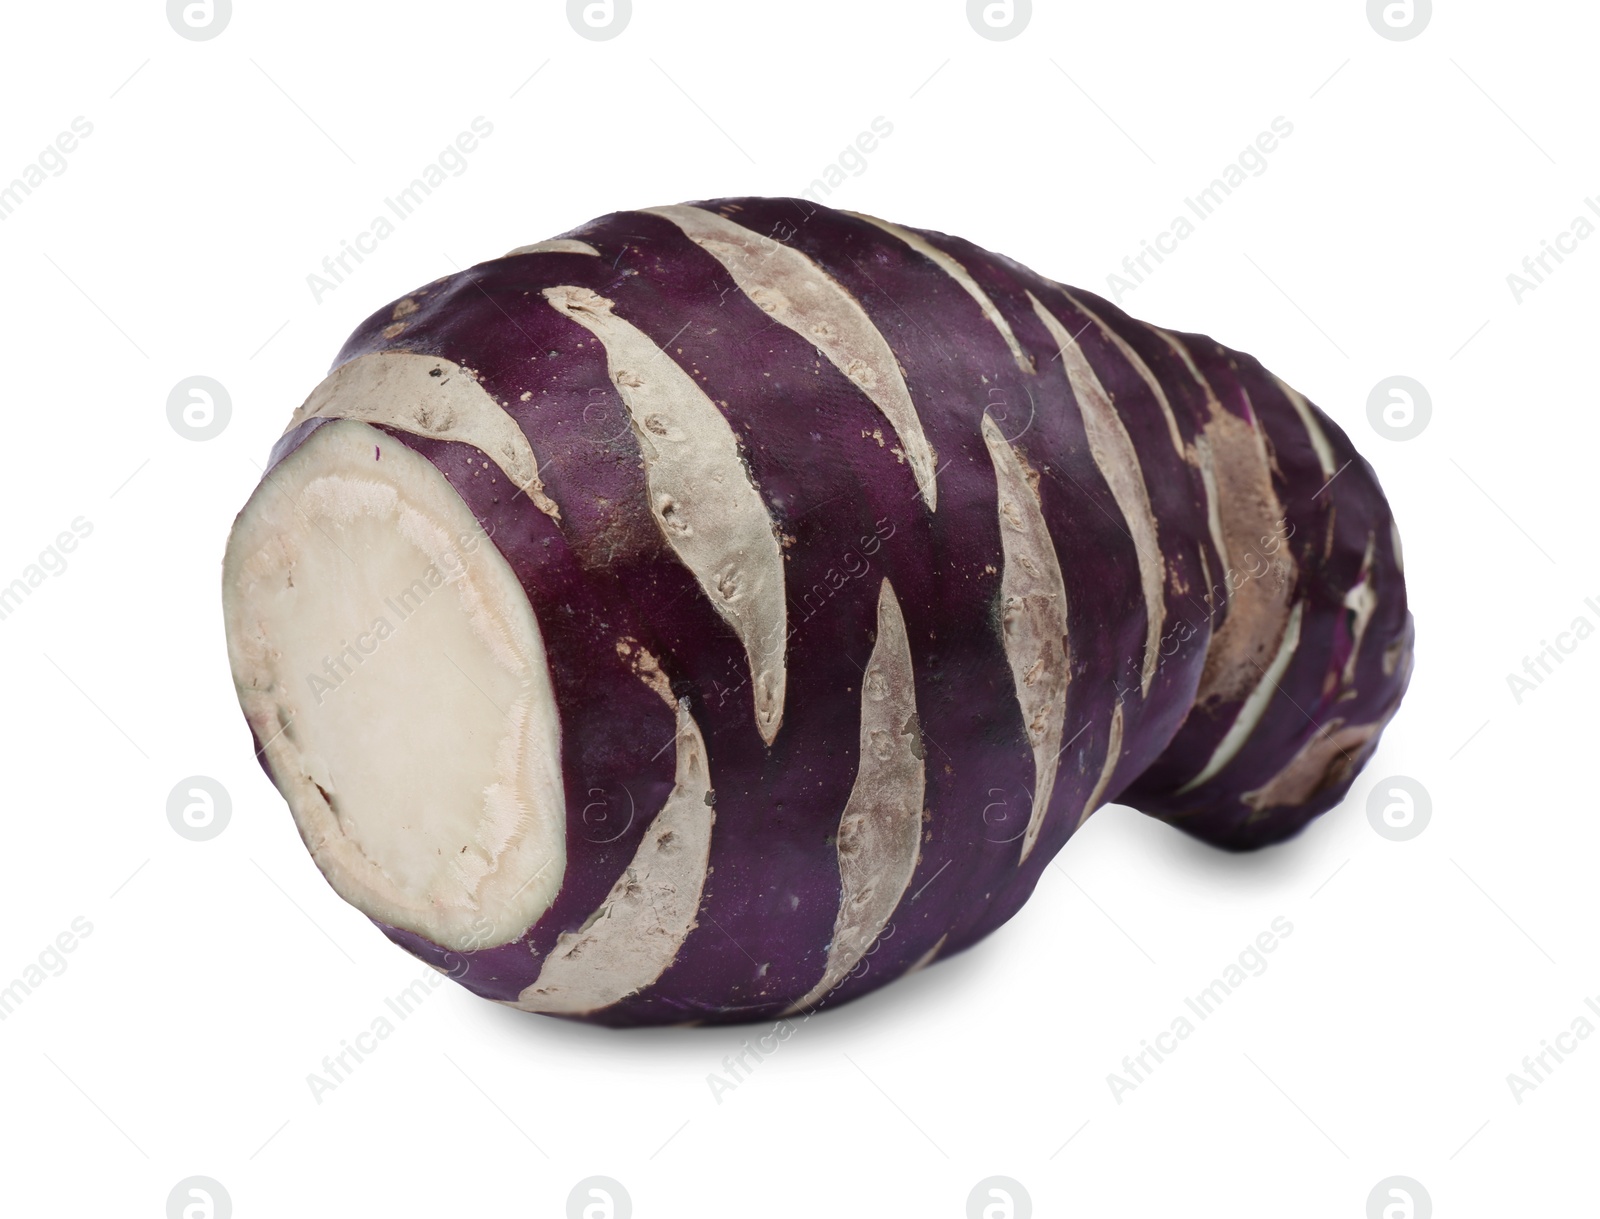 Photo of Tasty raw Kohlrabi cabbage isolated on white